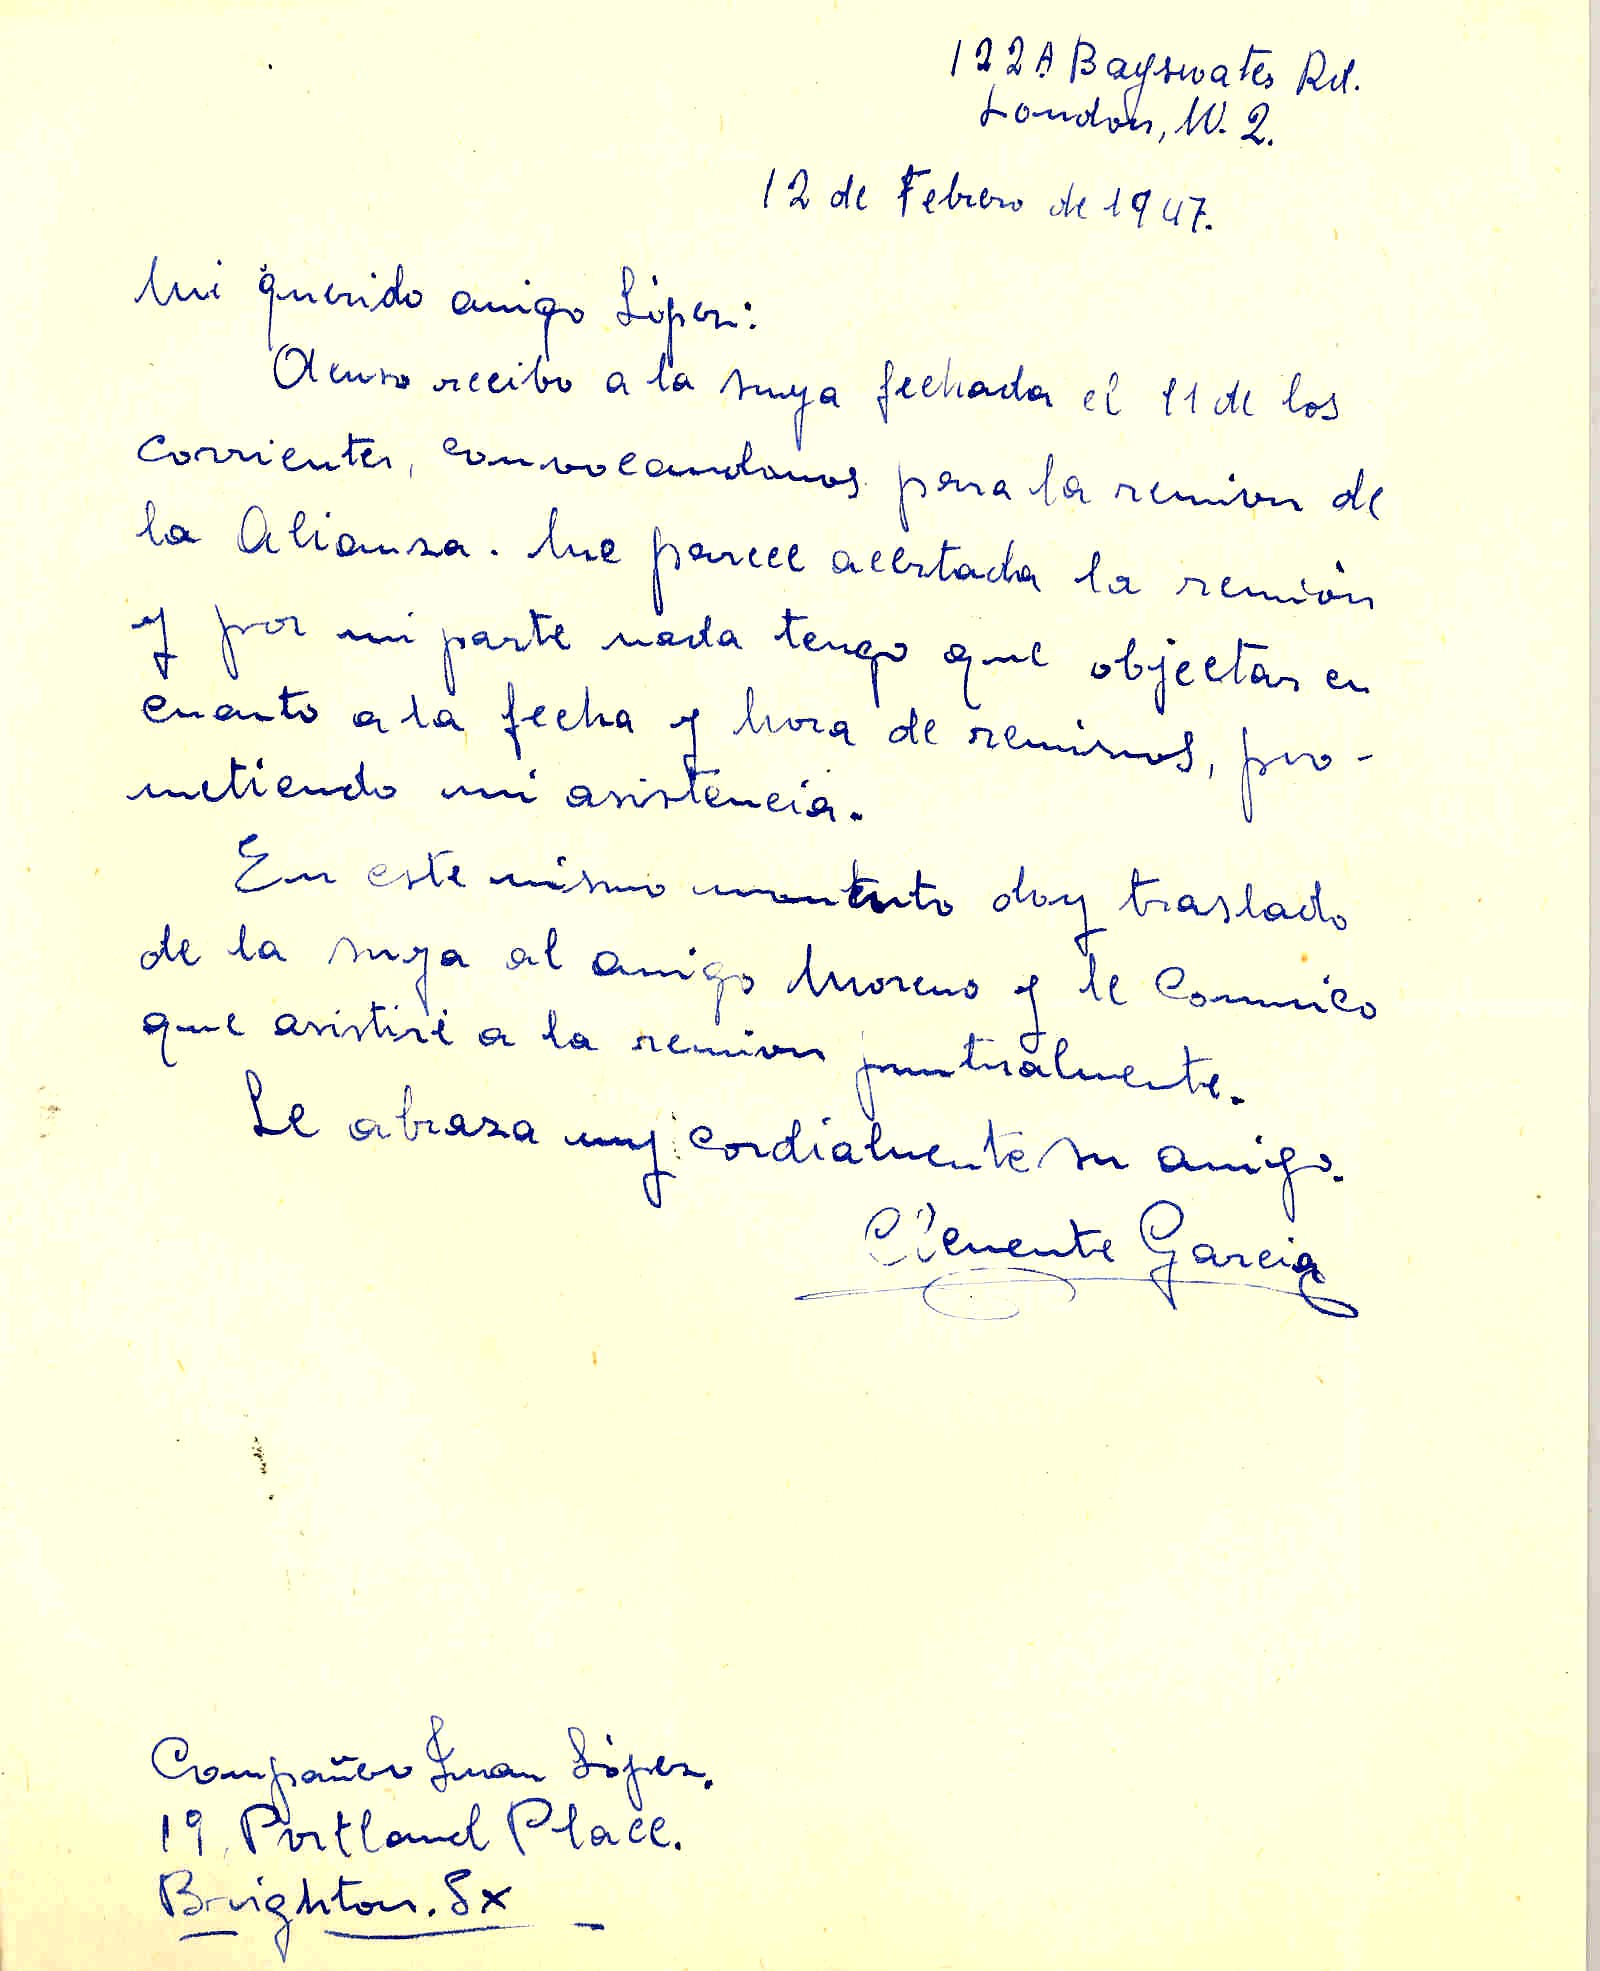 Carta de Cemente García comentando que está de acuerdo en que se realice la reunión de ANFD nombrada en la carta anterior.